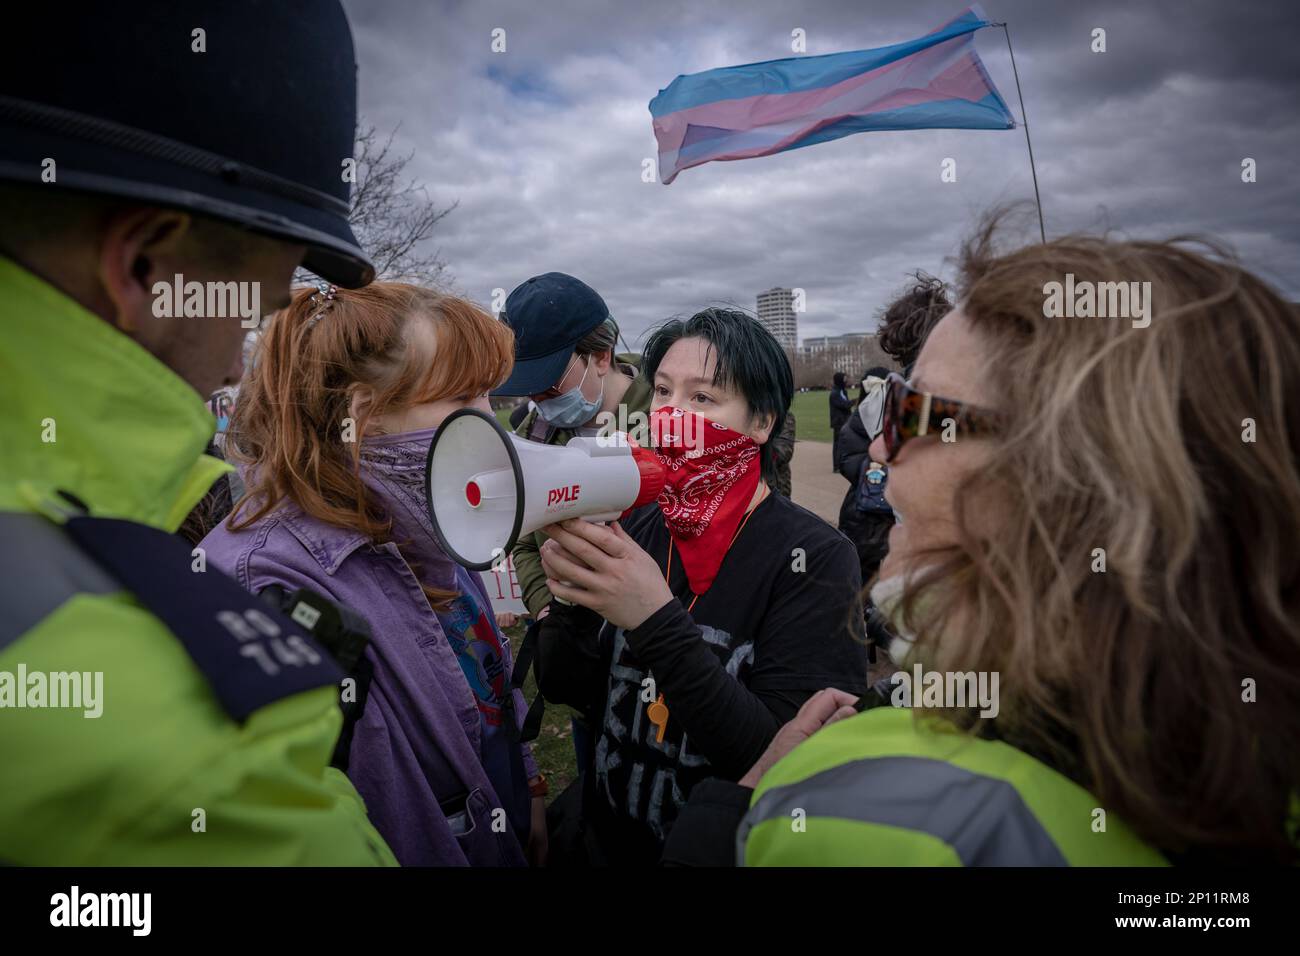 Gli attivisti dei diritti transgender si opporanno e si scontrano con Standing for Women femminists nei pressi dell'albero dei riformatori di Hyde Park, Londra, Regno Unito. Foto Stock